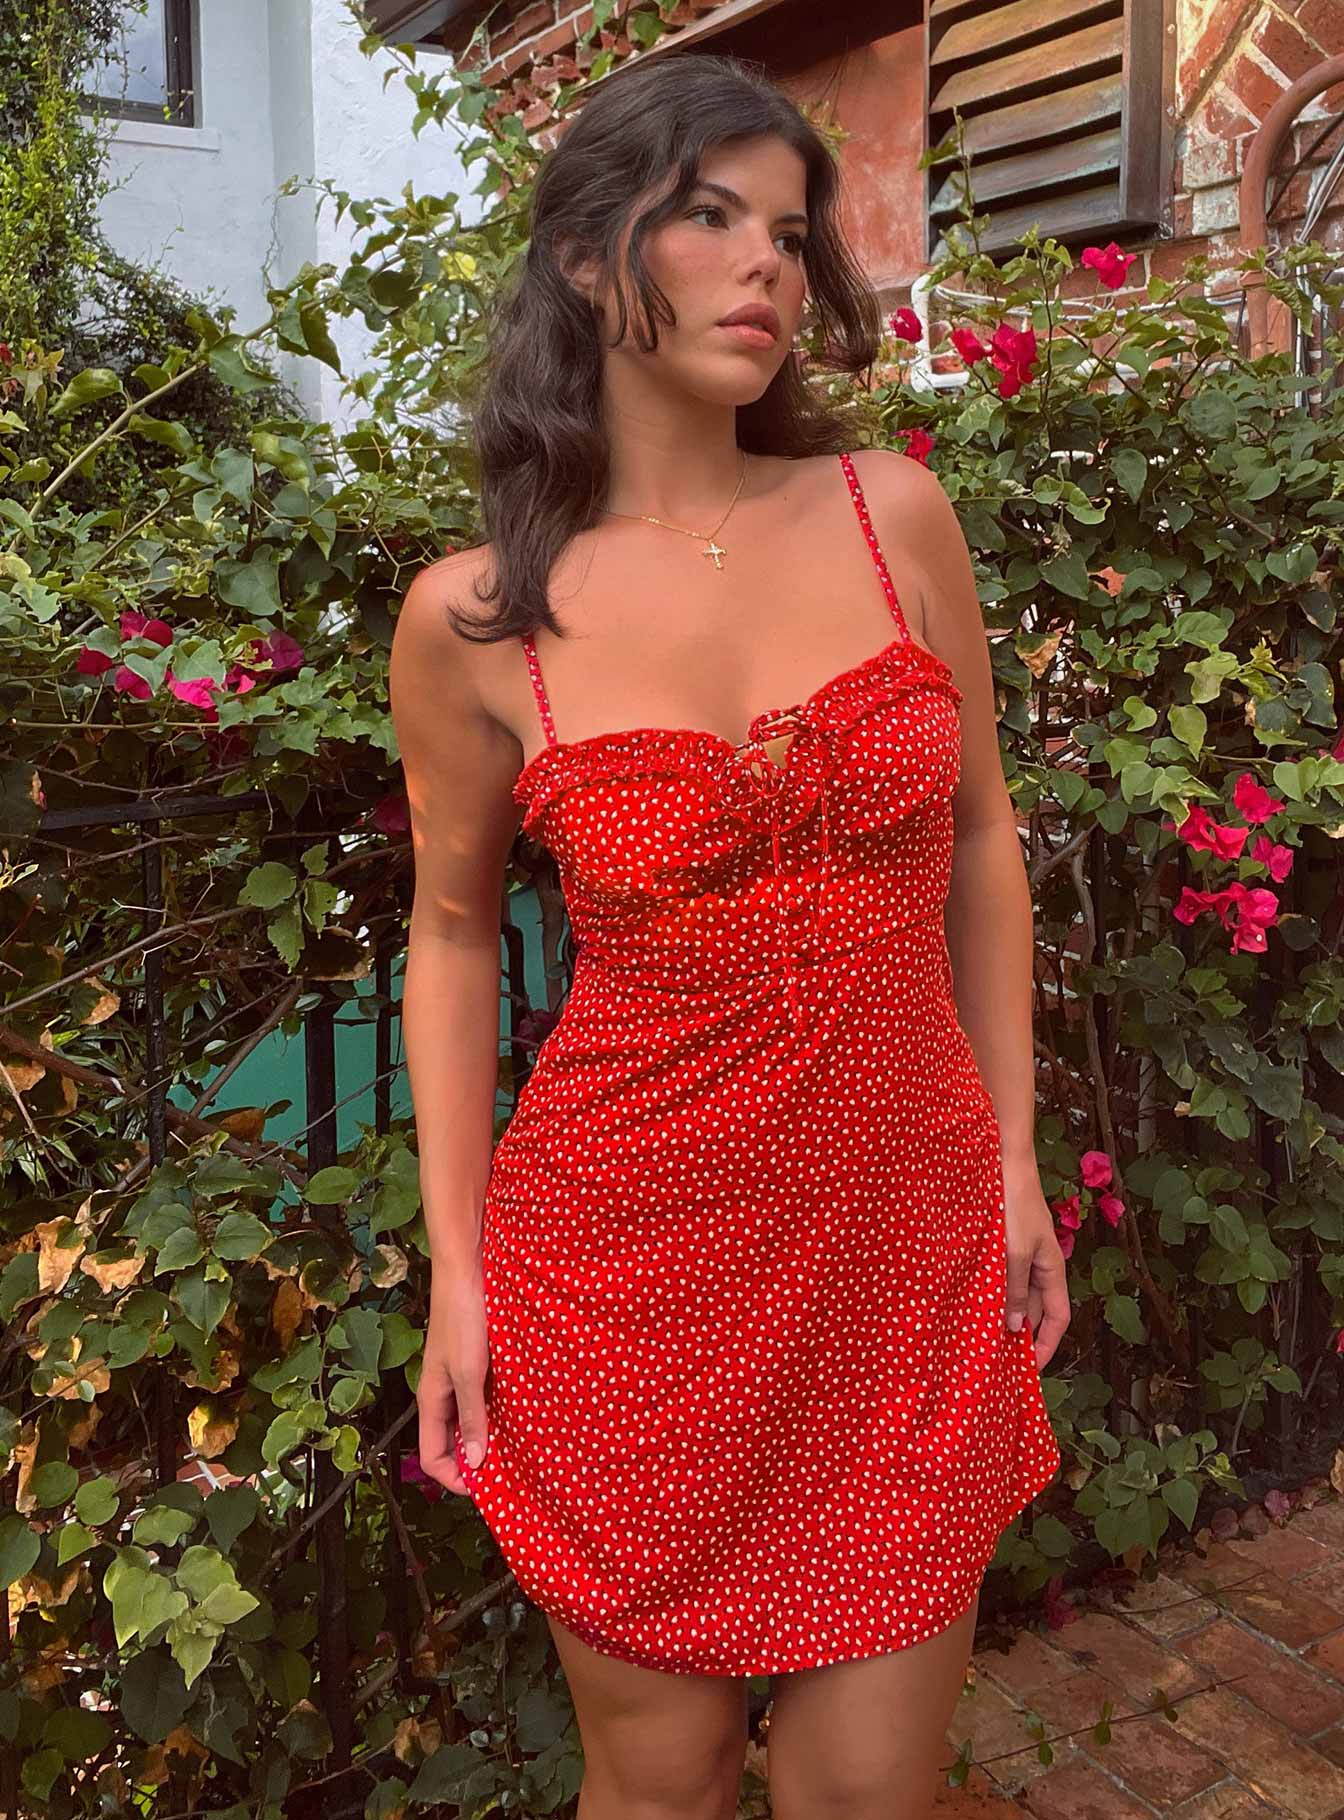 red summer dress